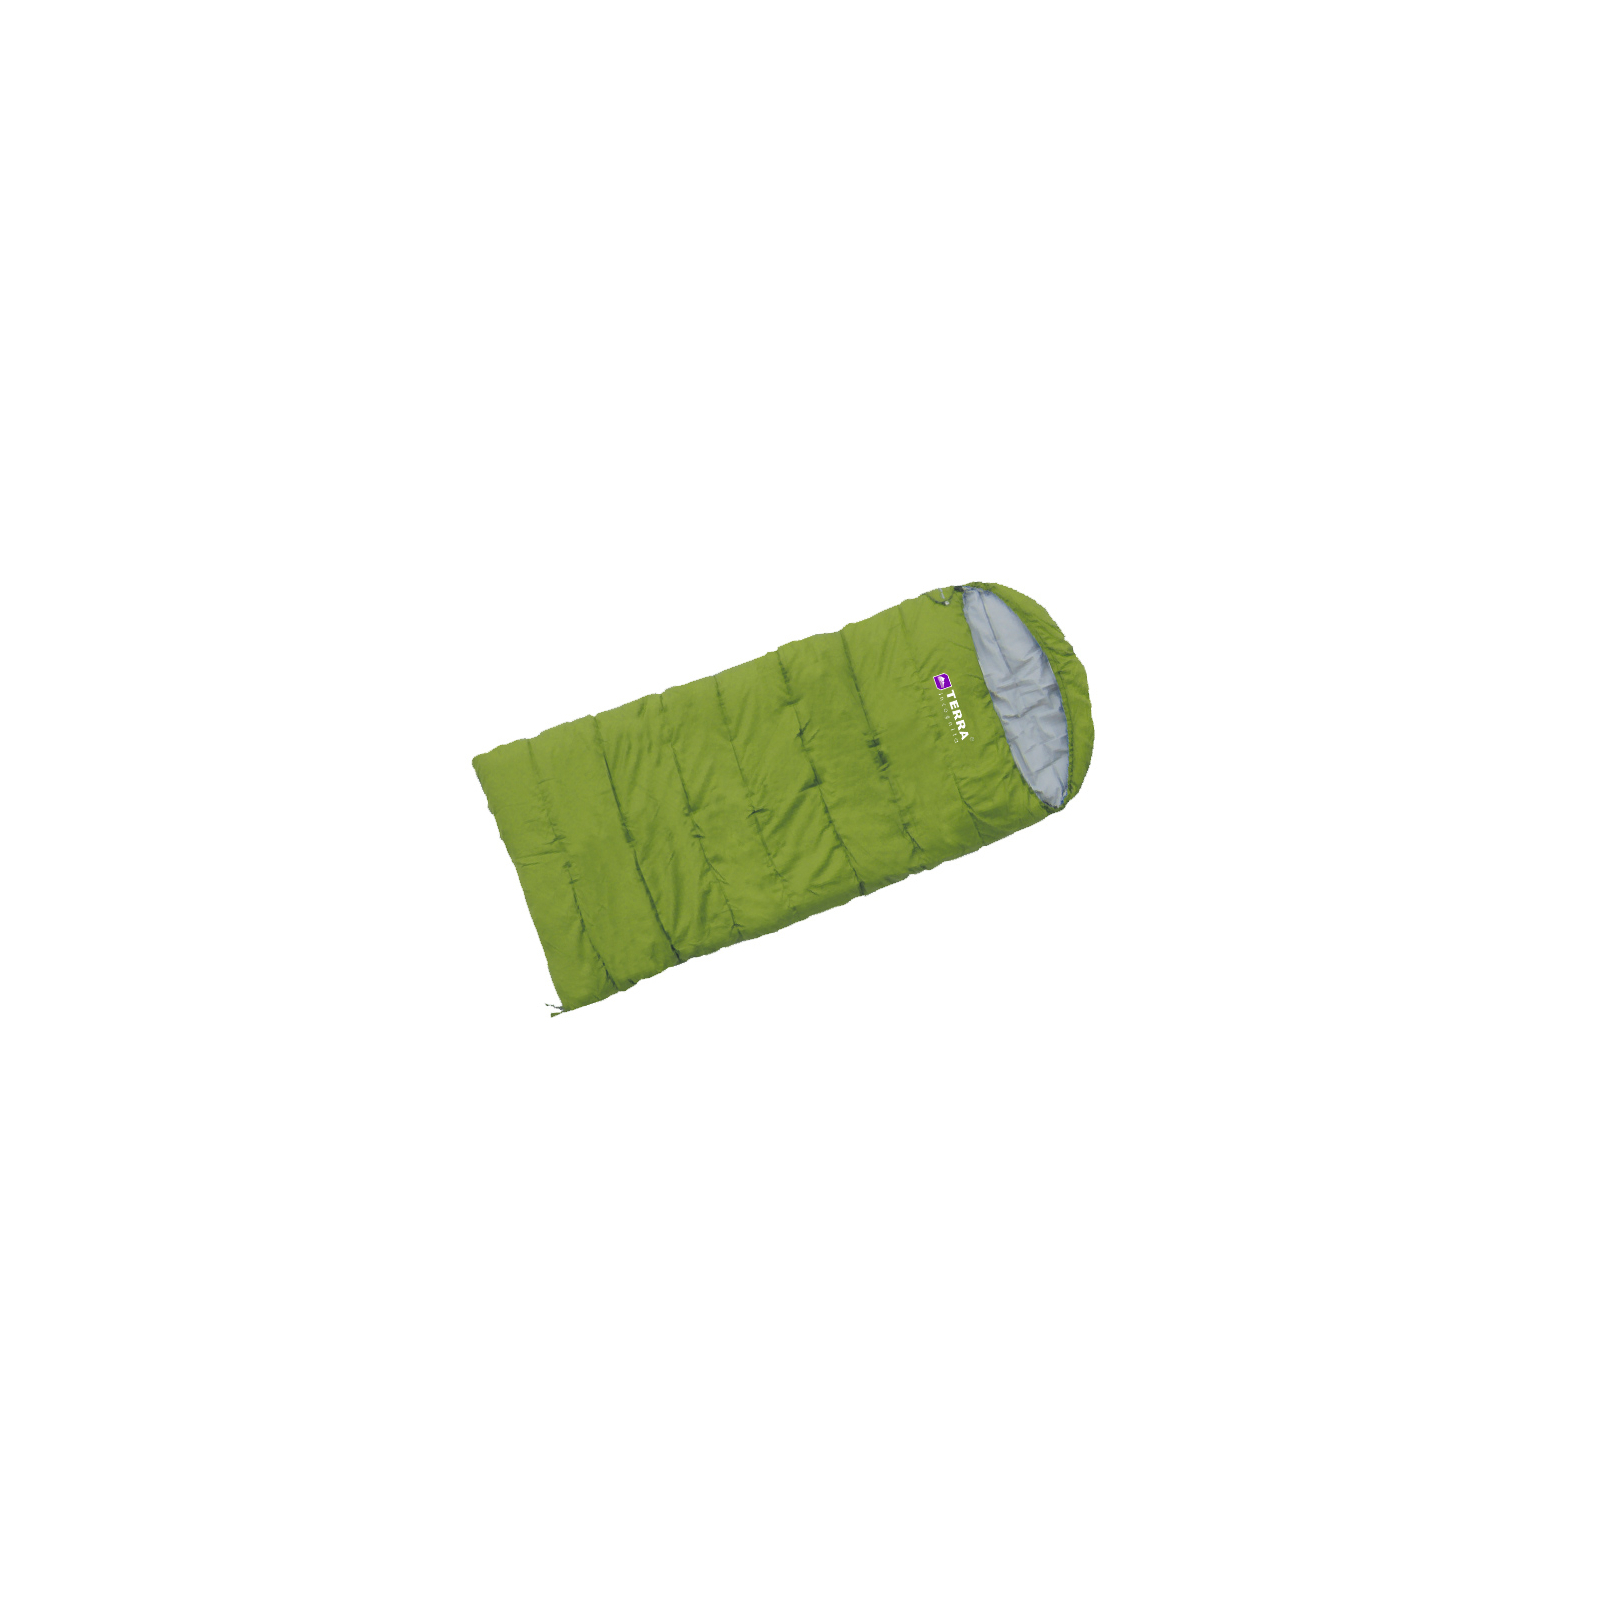 Спальный мешок Terra Incognita Asleep 300 JR (L) (зелёный) (4823081503576)